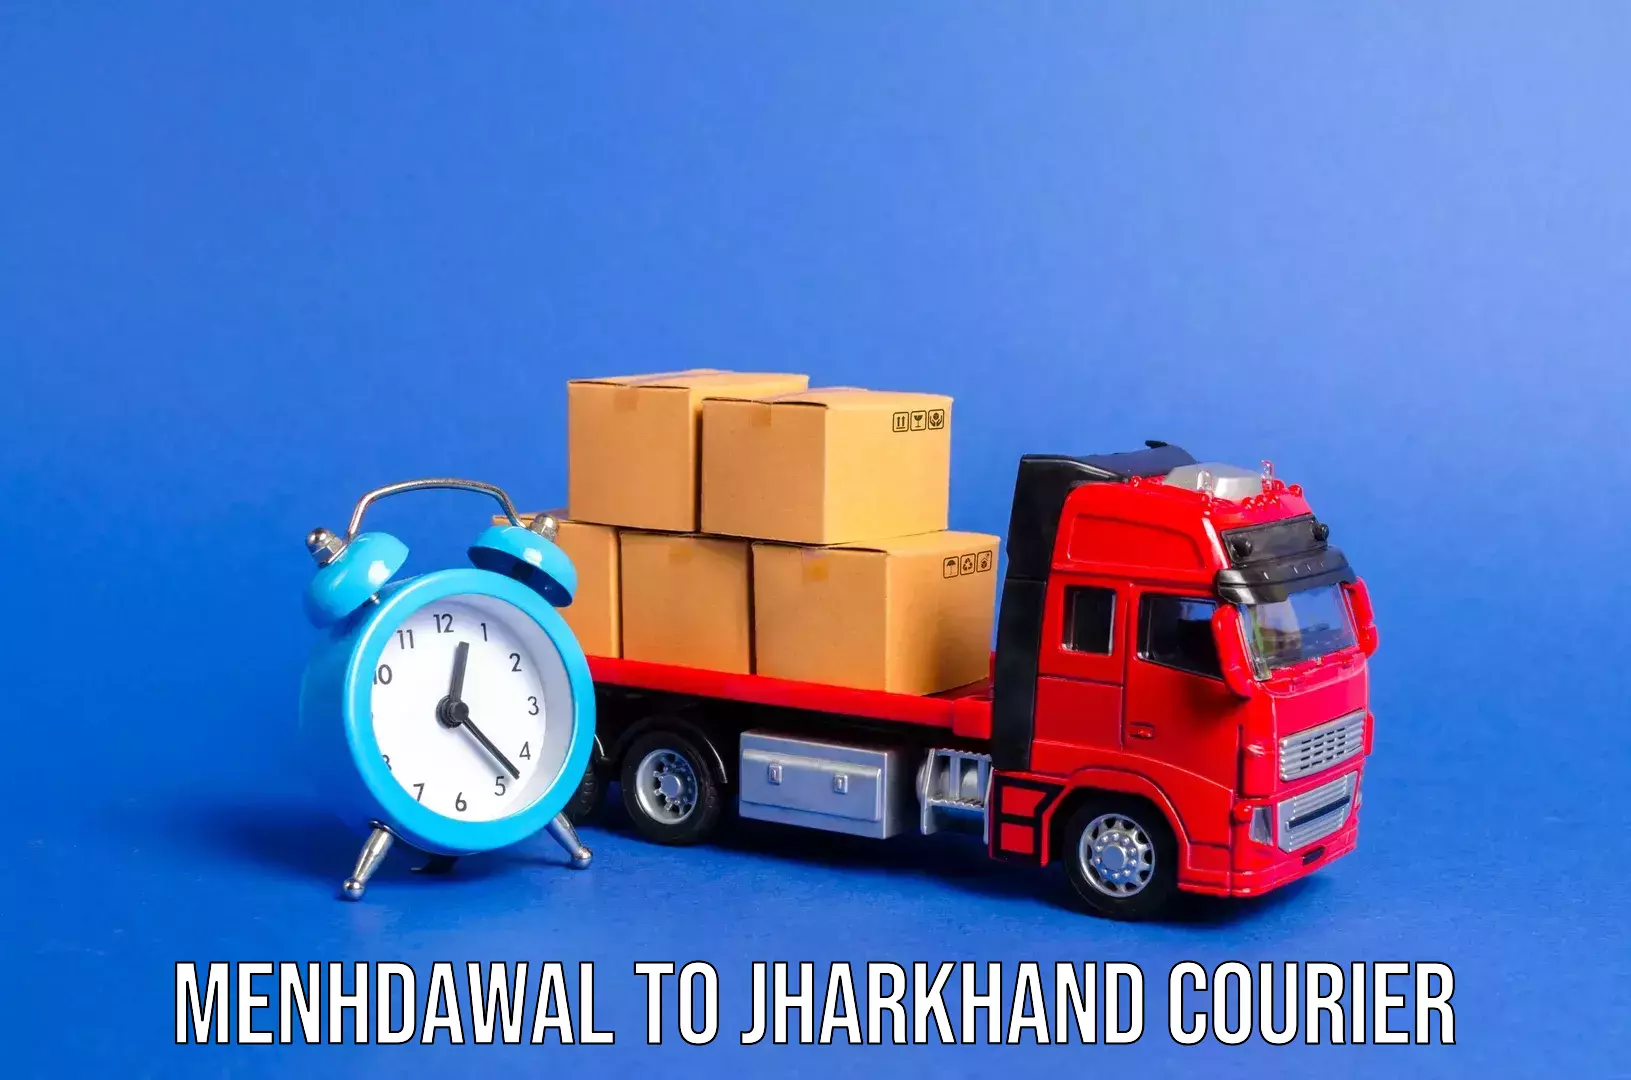 Express baggage shipping Menhdawal to Jharkhand